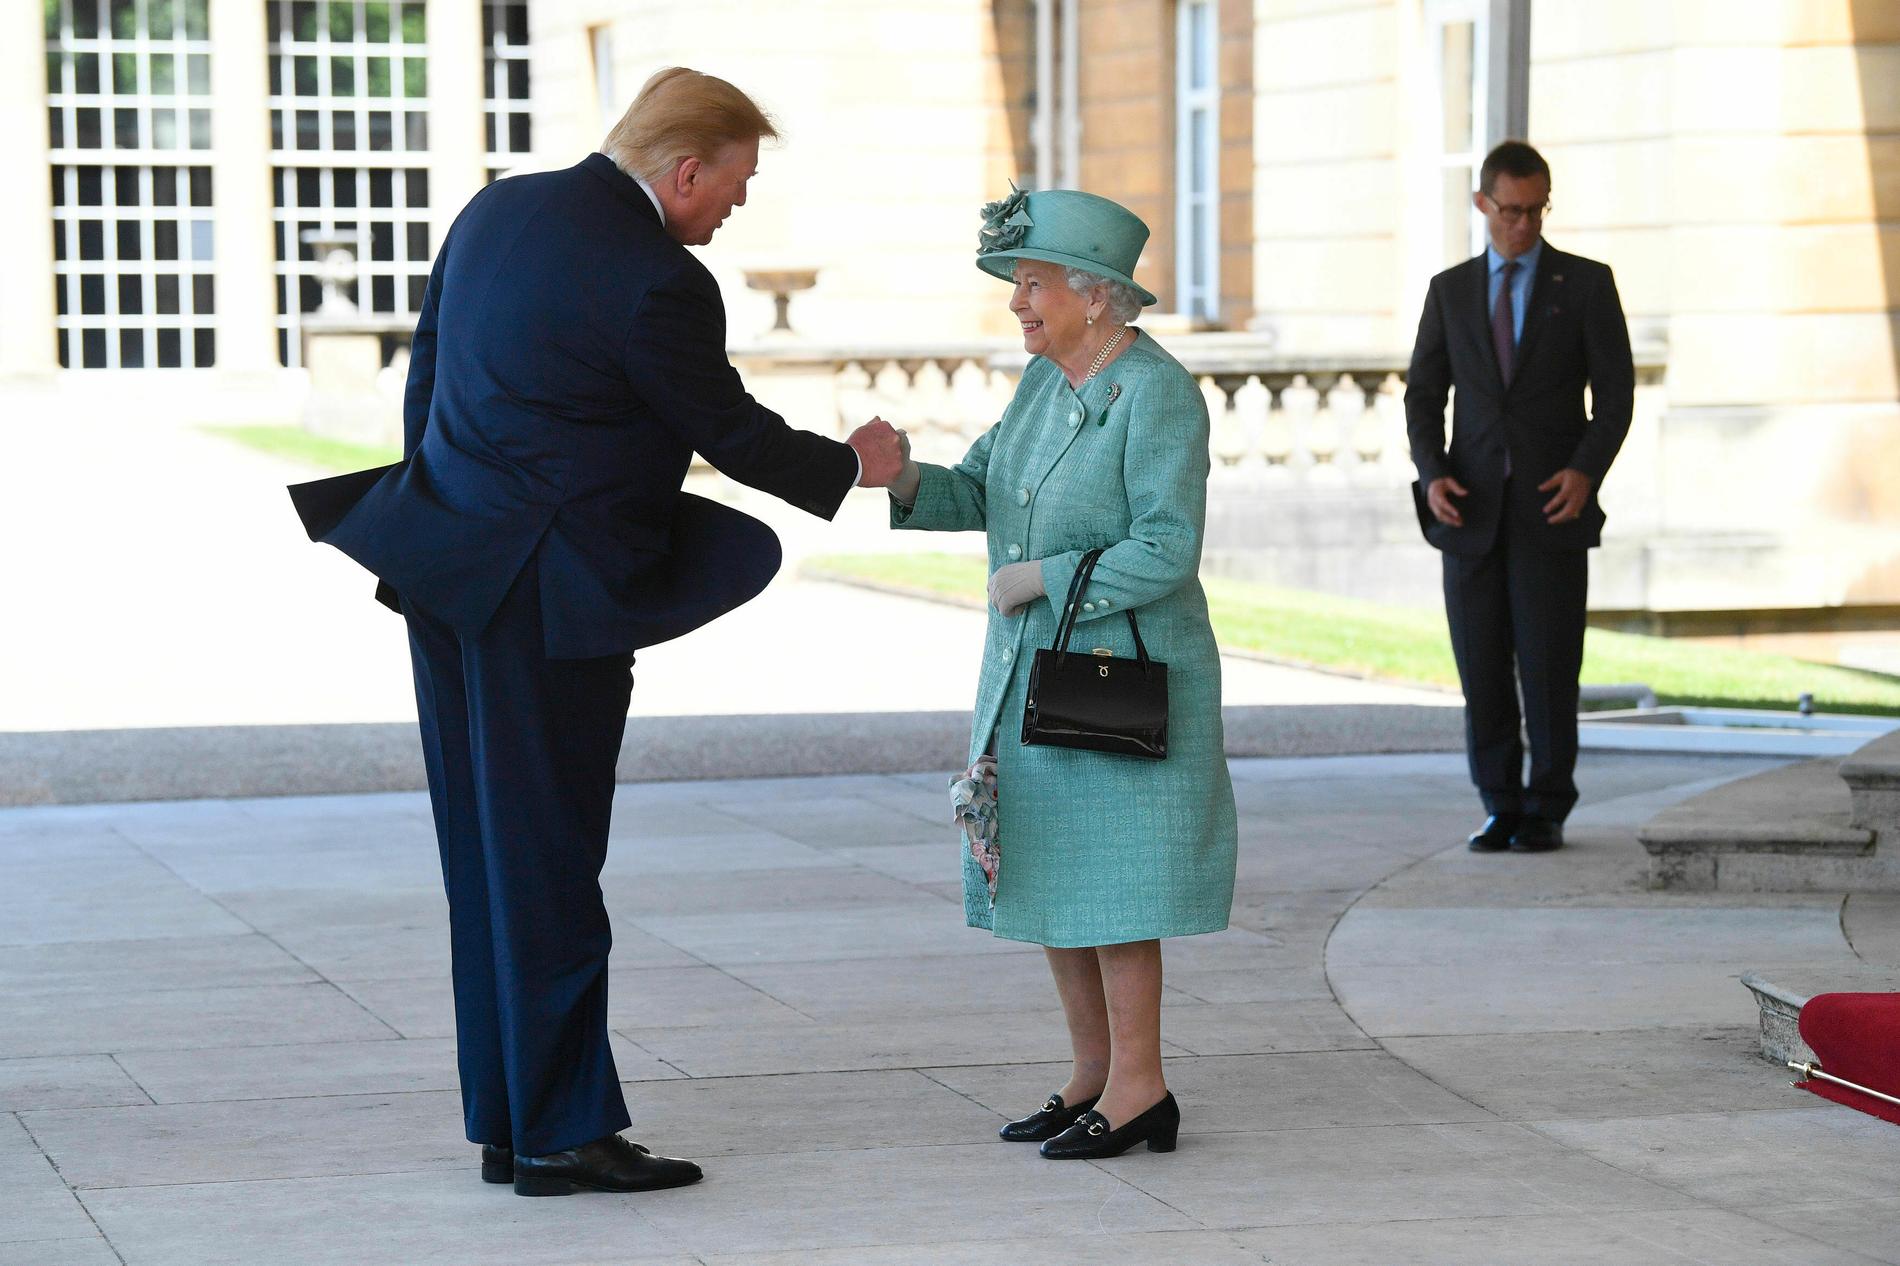 Drottning Elizabeth hälsar på Donald Trump.